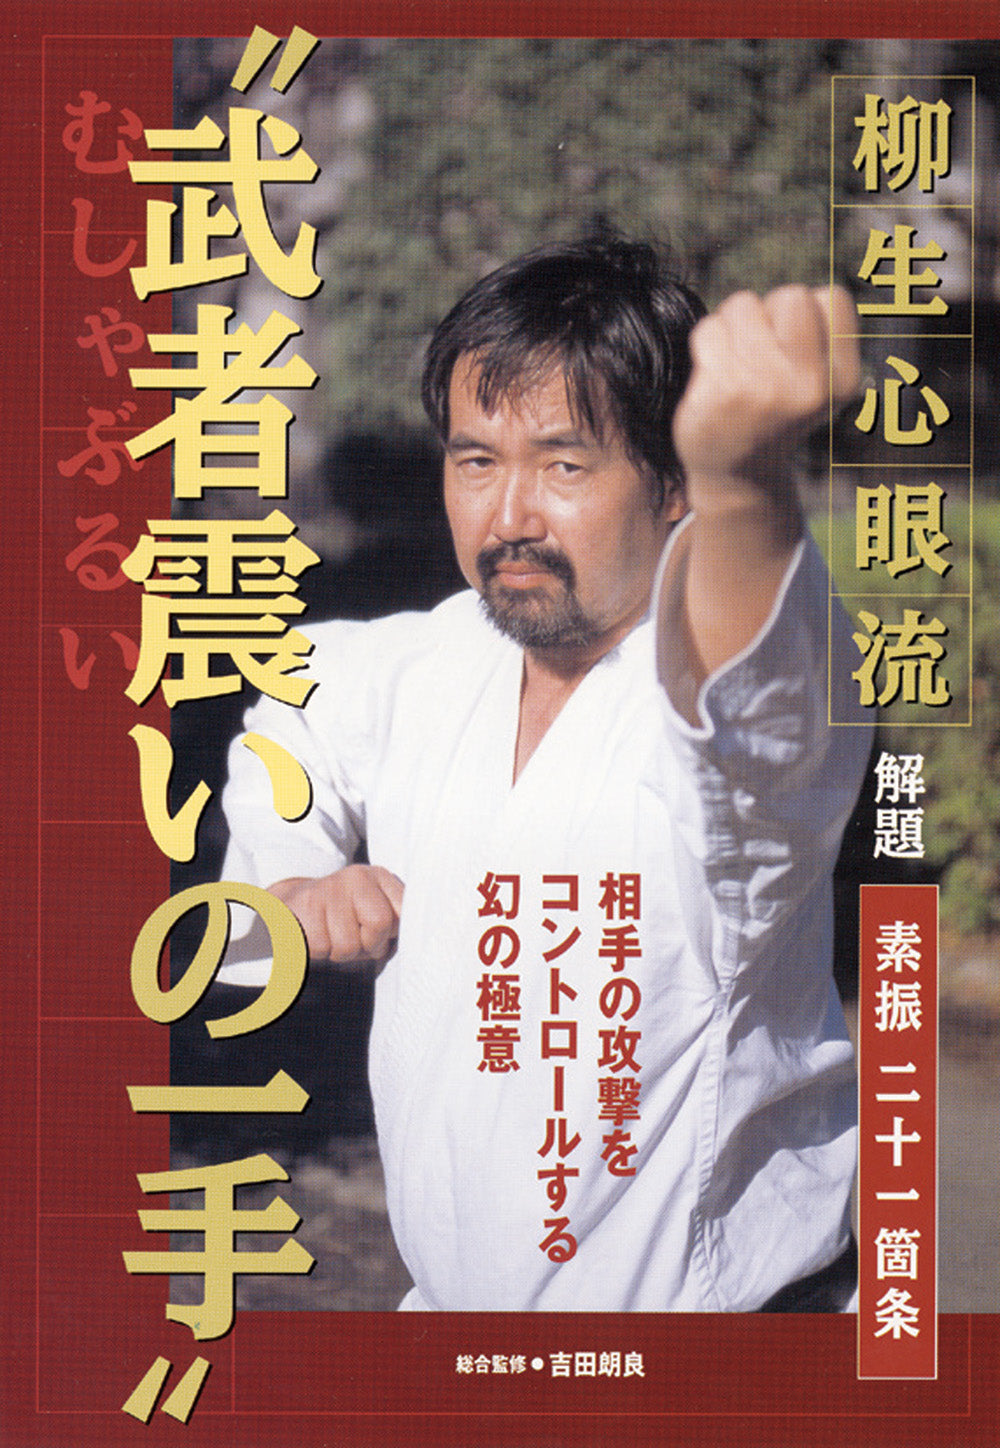 Yagyu Shingan Ryu Taijutsu DVD con Akira Yoshida